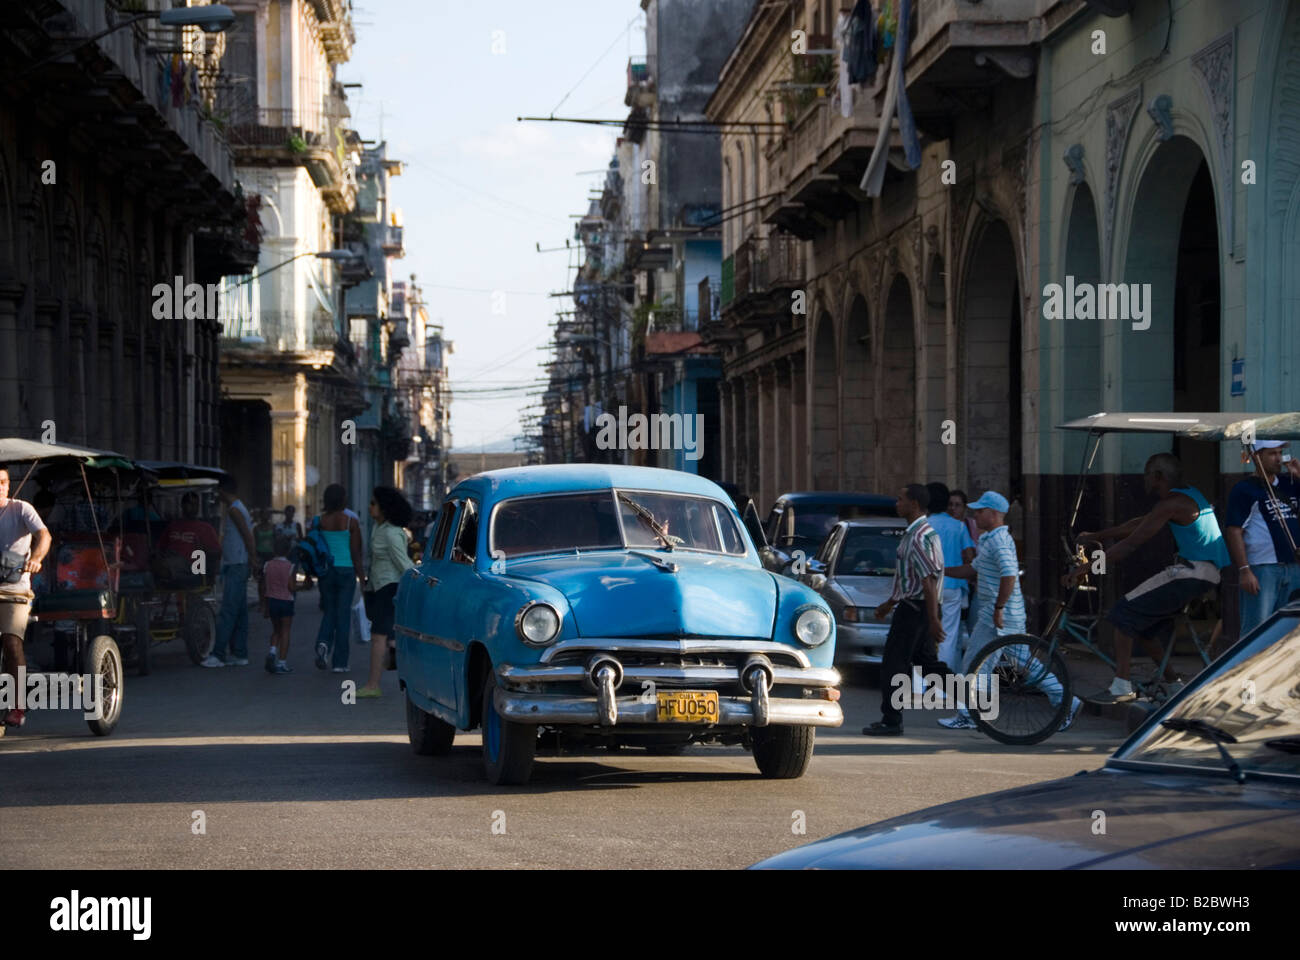 Strada trafficata scena con amercan vecchia auto d'epoca coloniale e Architettura a La Habana Vieja La Habana Cuba Foto Stock